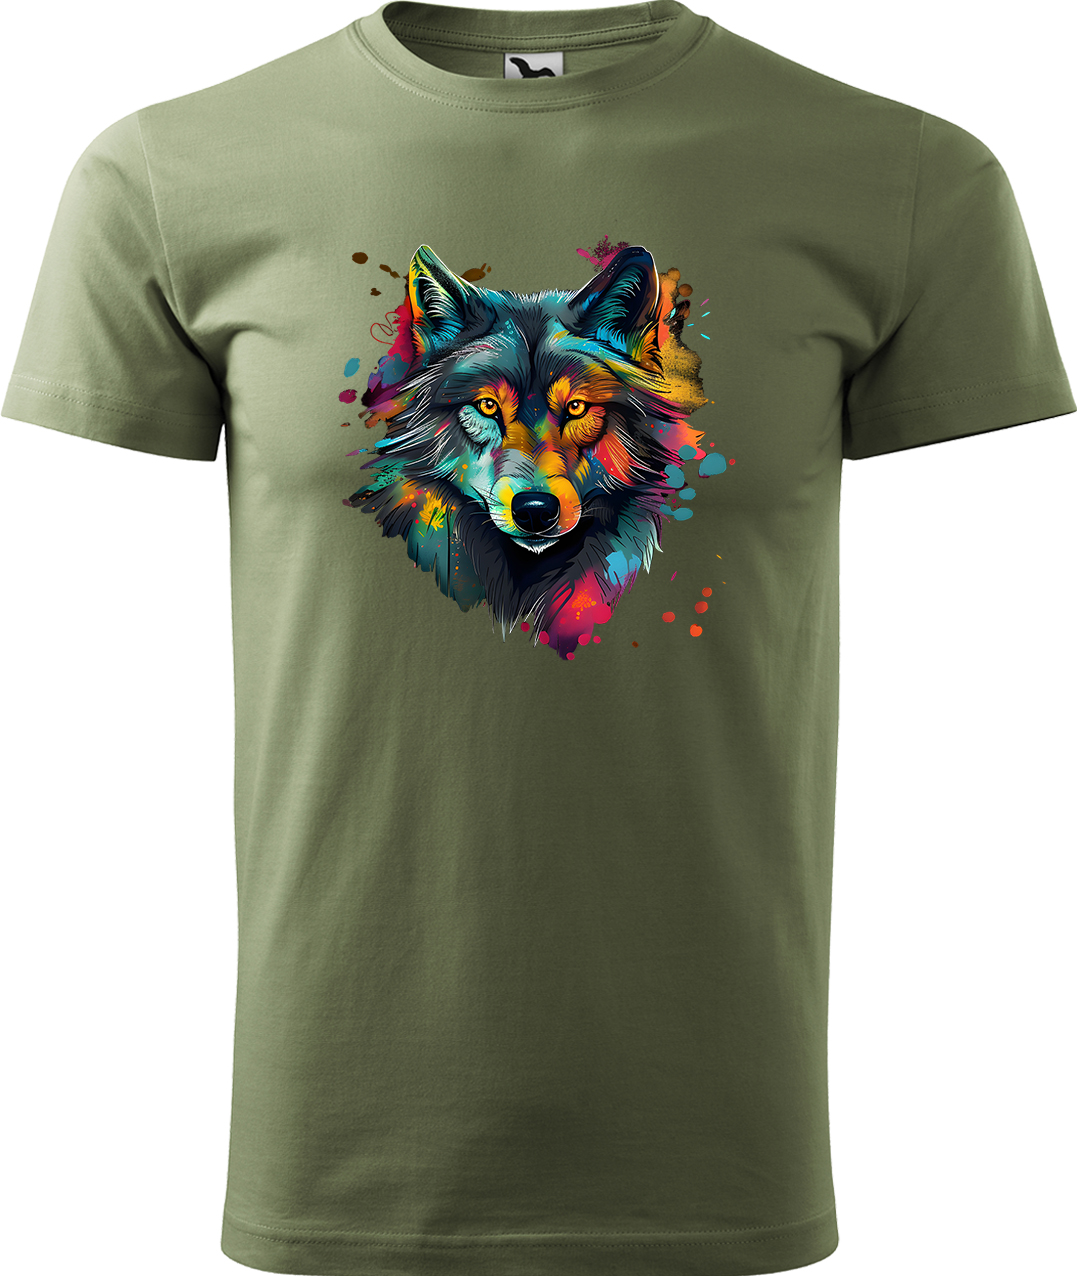 Pánské tričko s vlkem - Malovaný vlk Velikost: 4XL, Barva: Světlá khaki (28), Střih: pánský